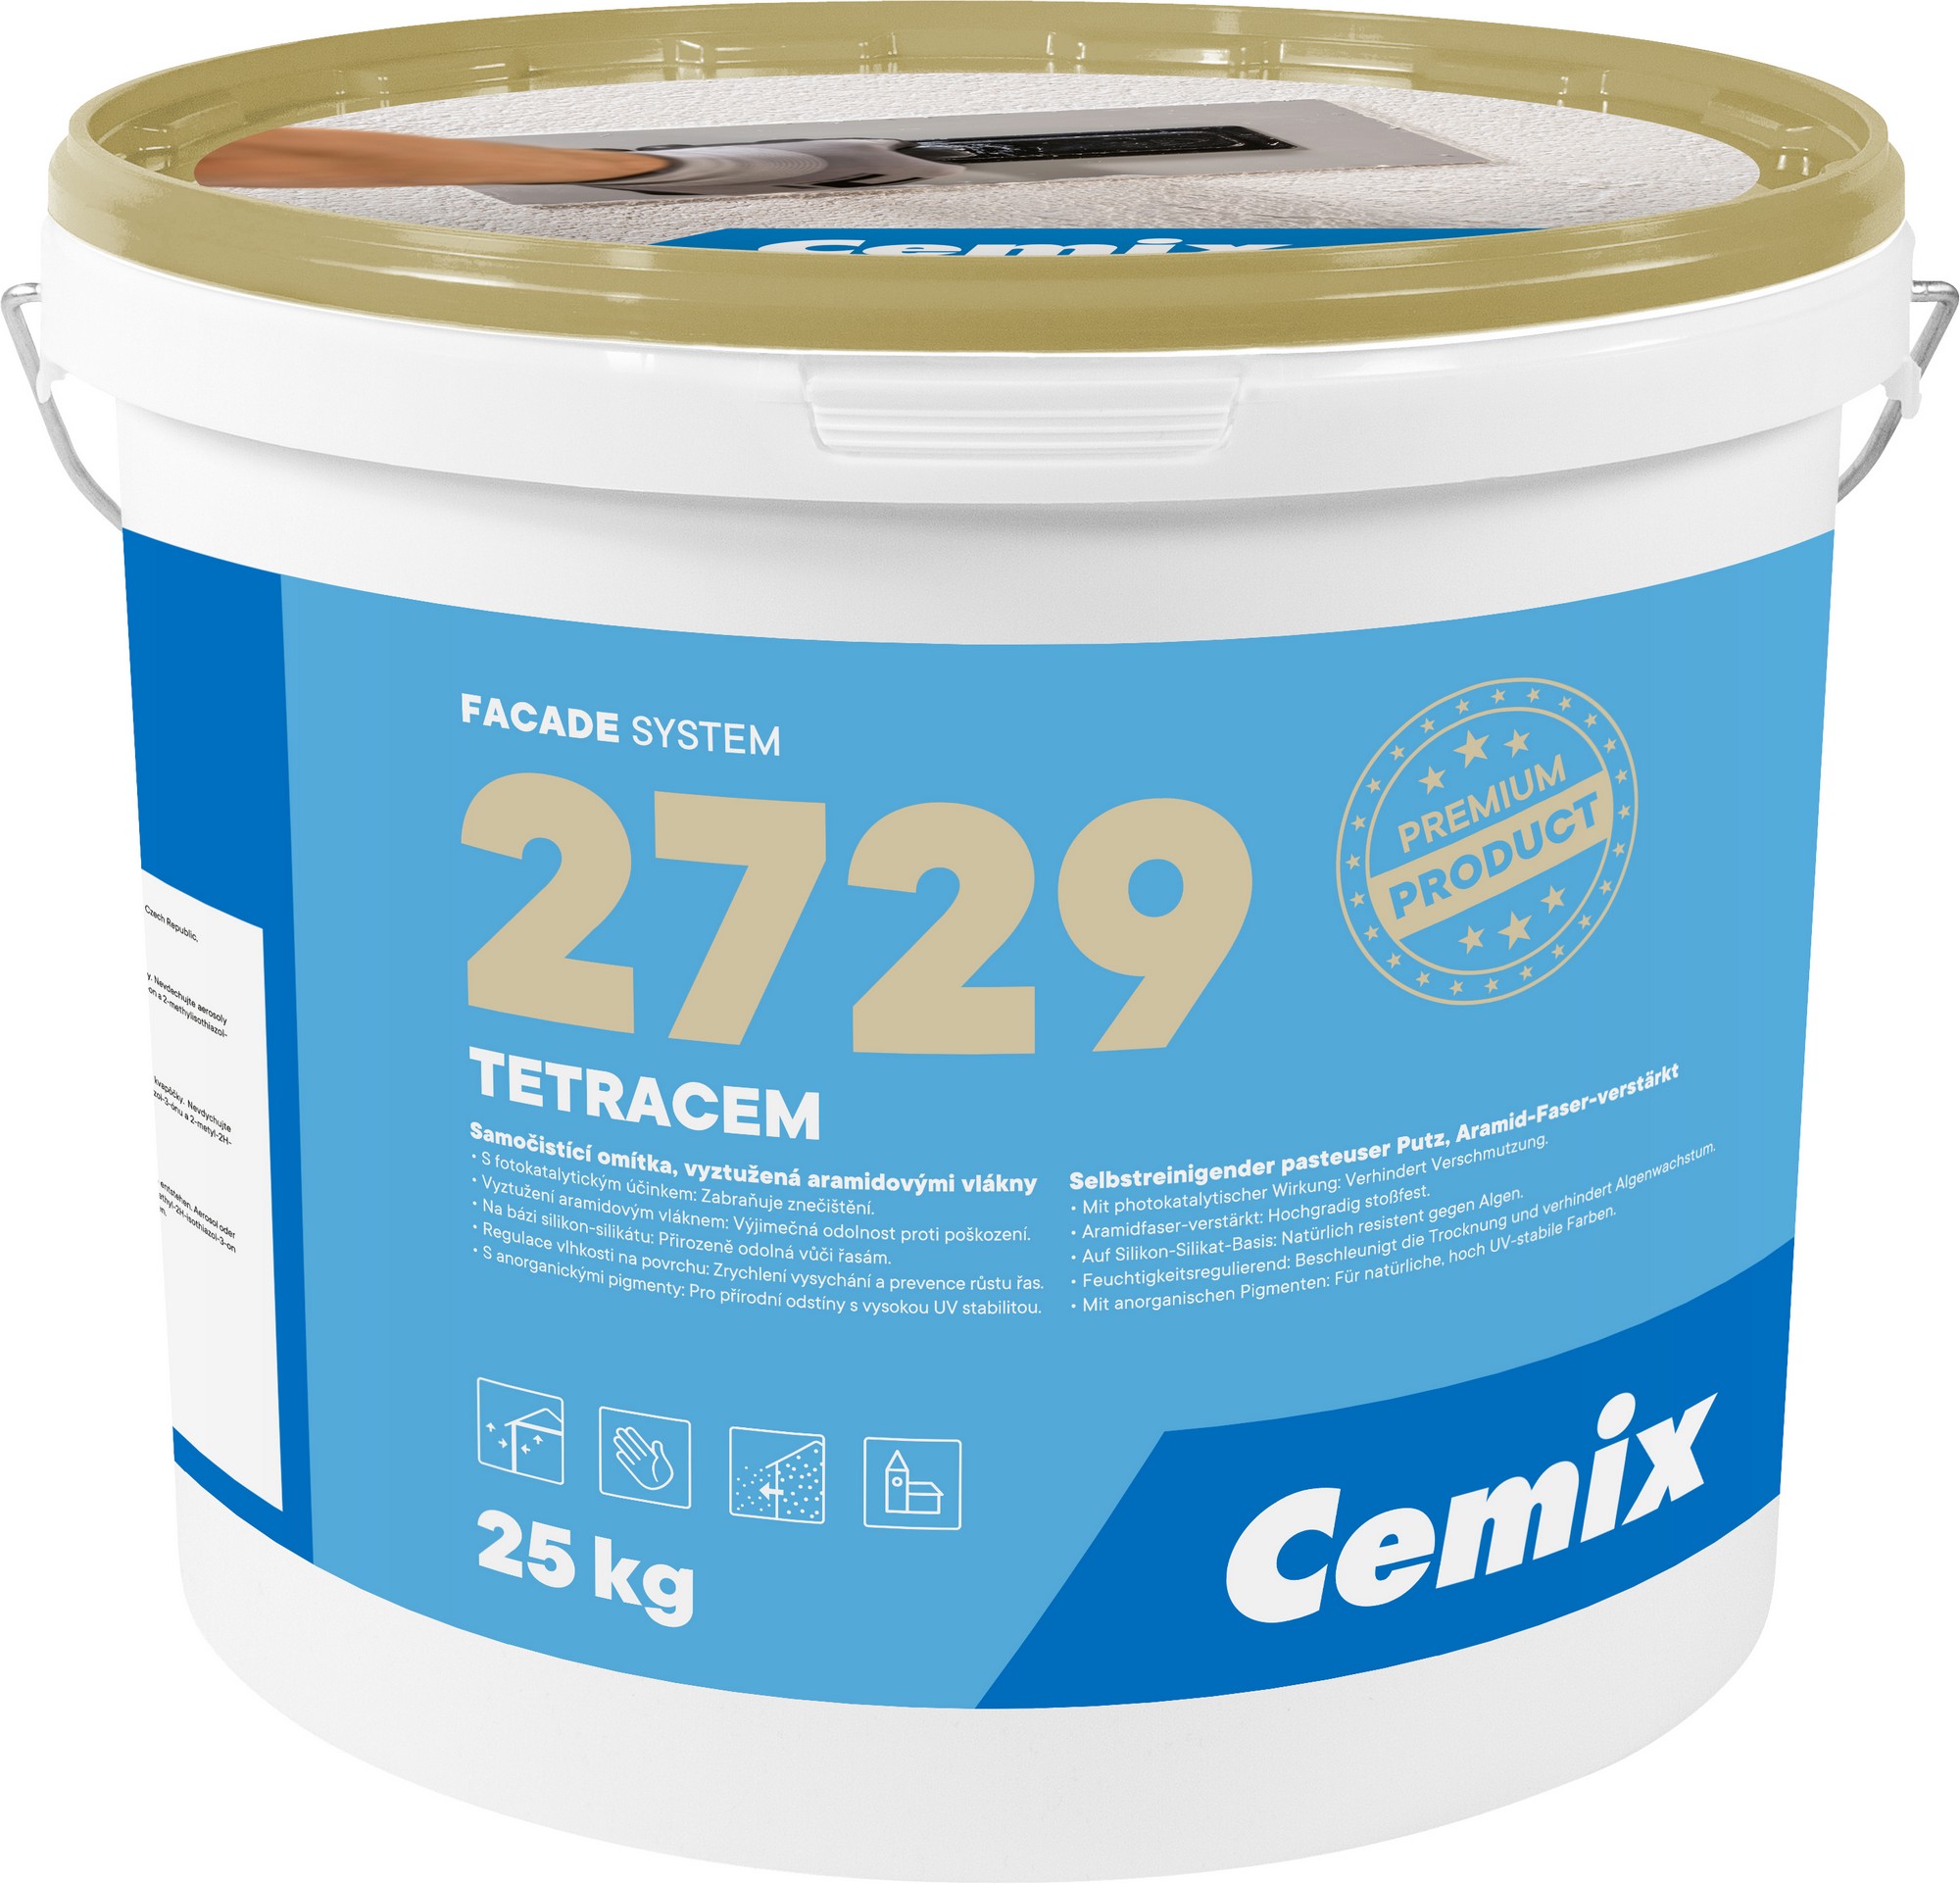 Omítka samočisticí Cemix 2729 TETRACEM R 1,5 mm bezpř., 25 kg